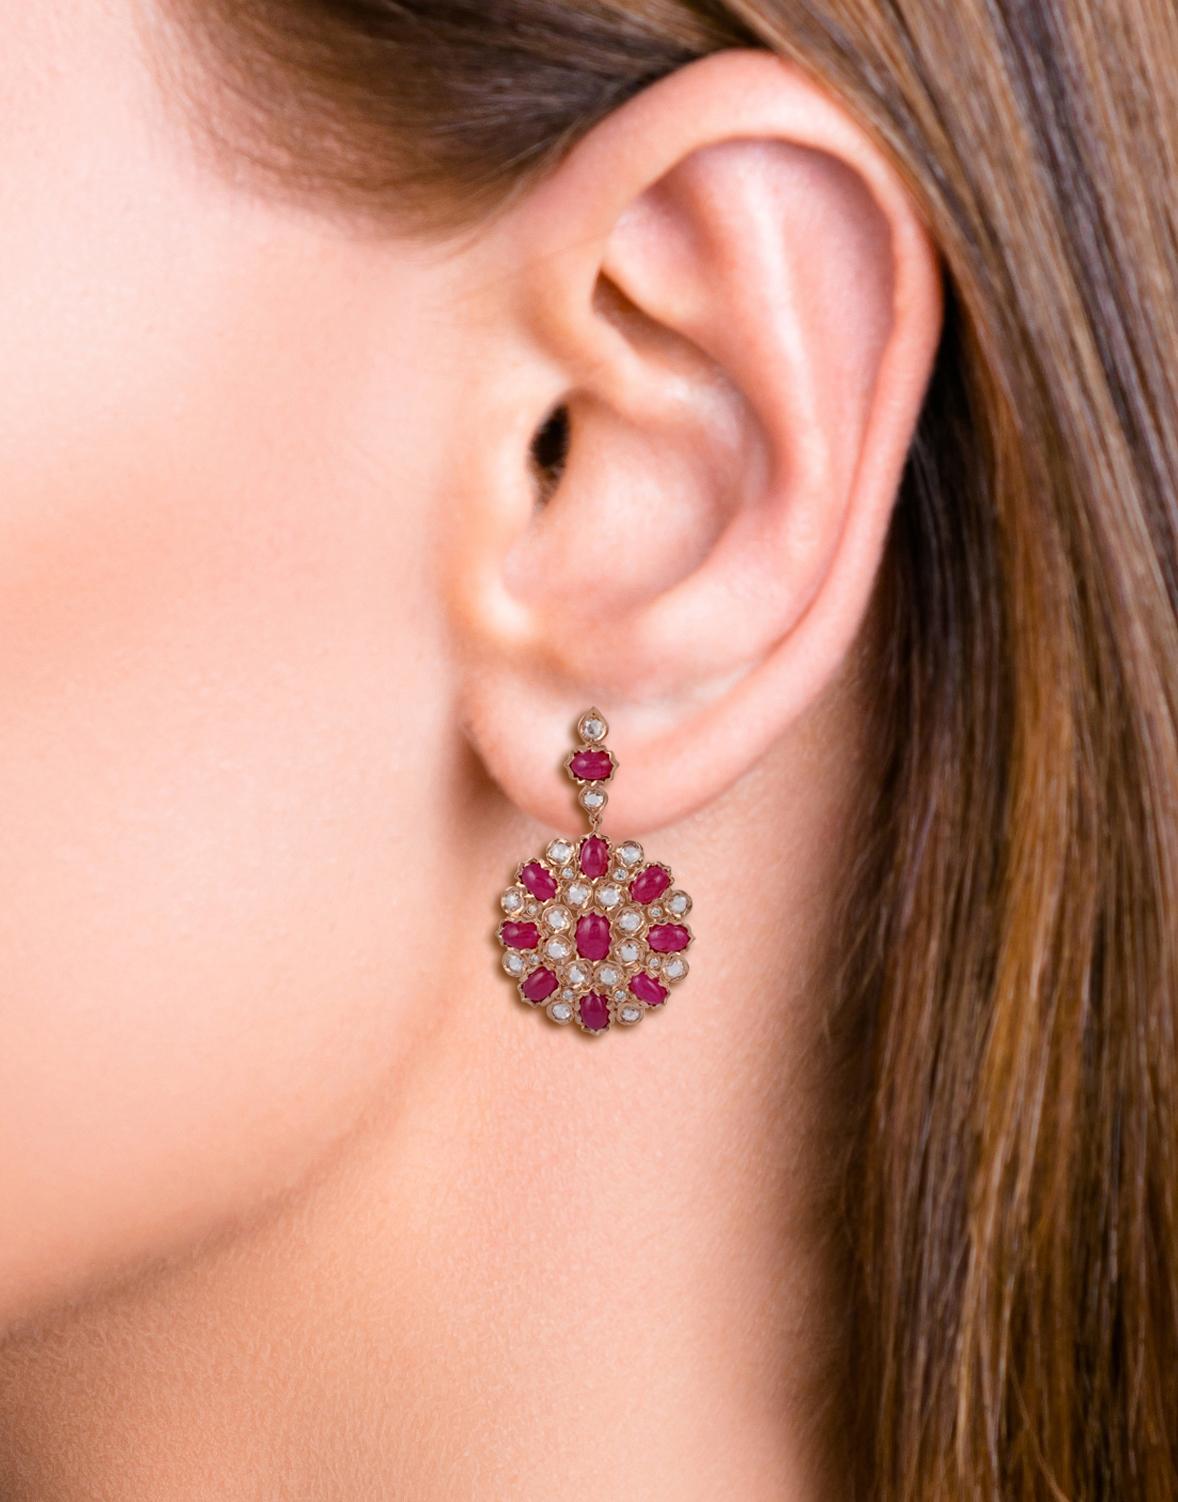 Cabochon 14.04 Carat Burma Ruby Diamond Chandelier Earrings in 18k Rose Gold For Sale